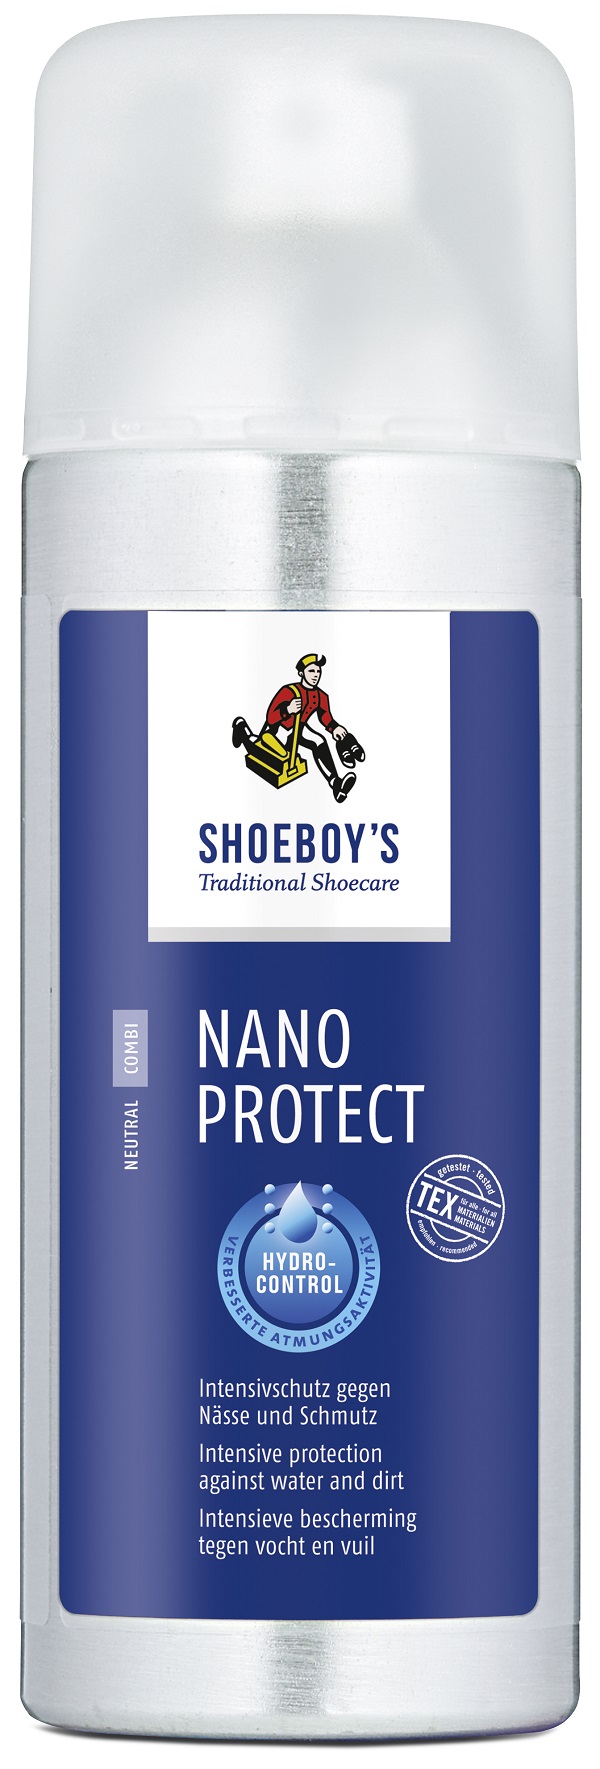 Schoeboys Nano Protect Stoot alle vuil en vocht af van het behandelde materiaal en blijft ademend